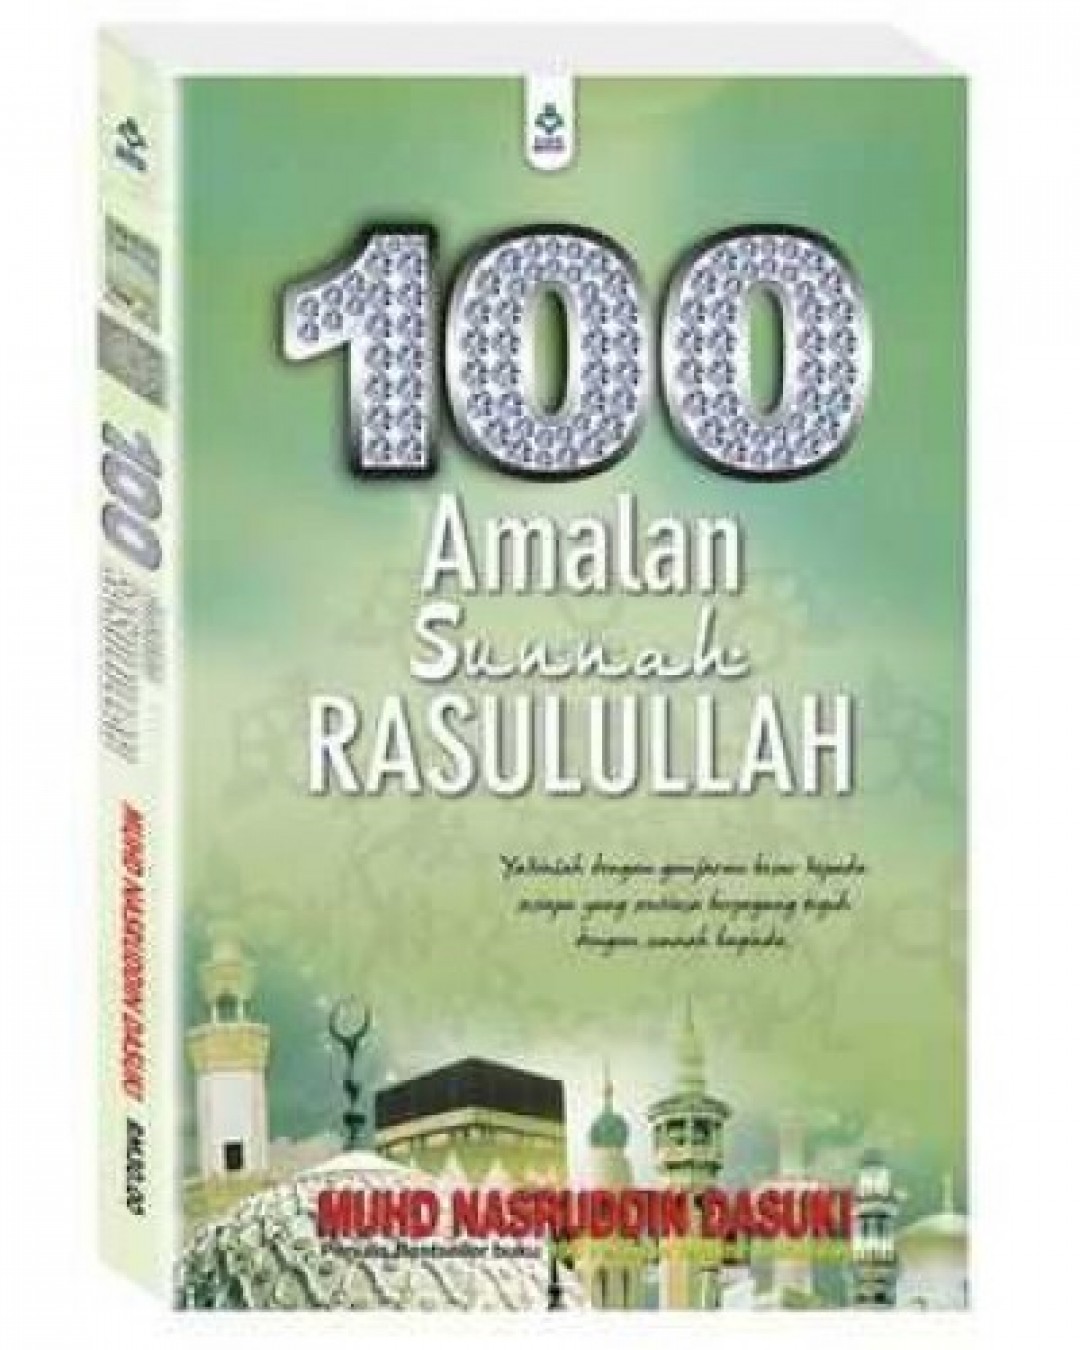 100 Amalan Sunnah Rasulullah - Muhd Nasruddin Dasuki